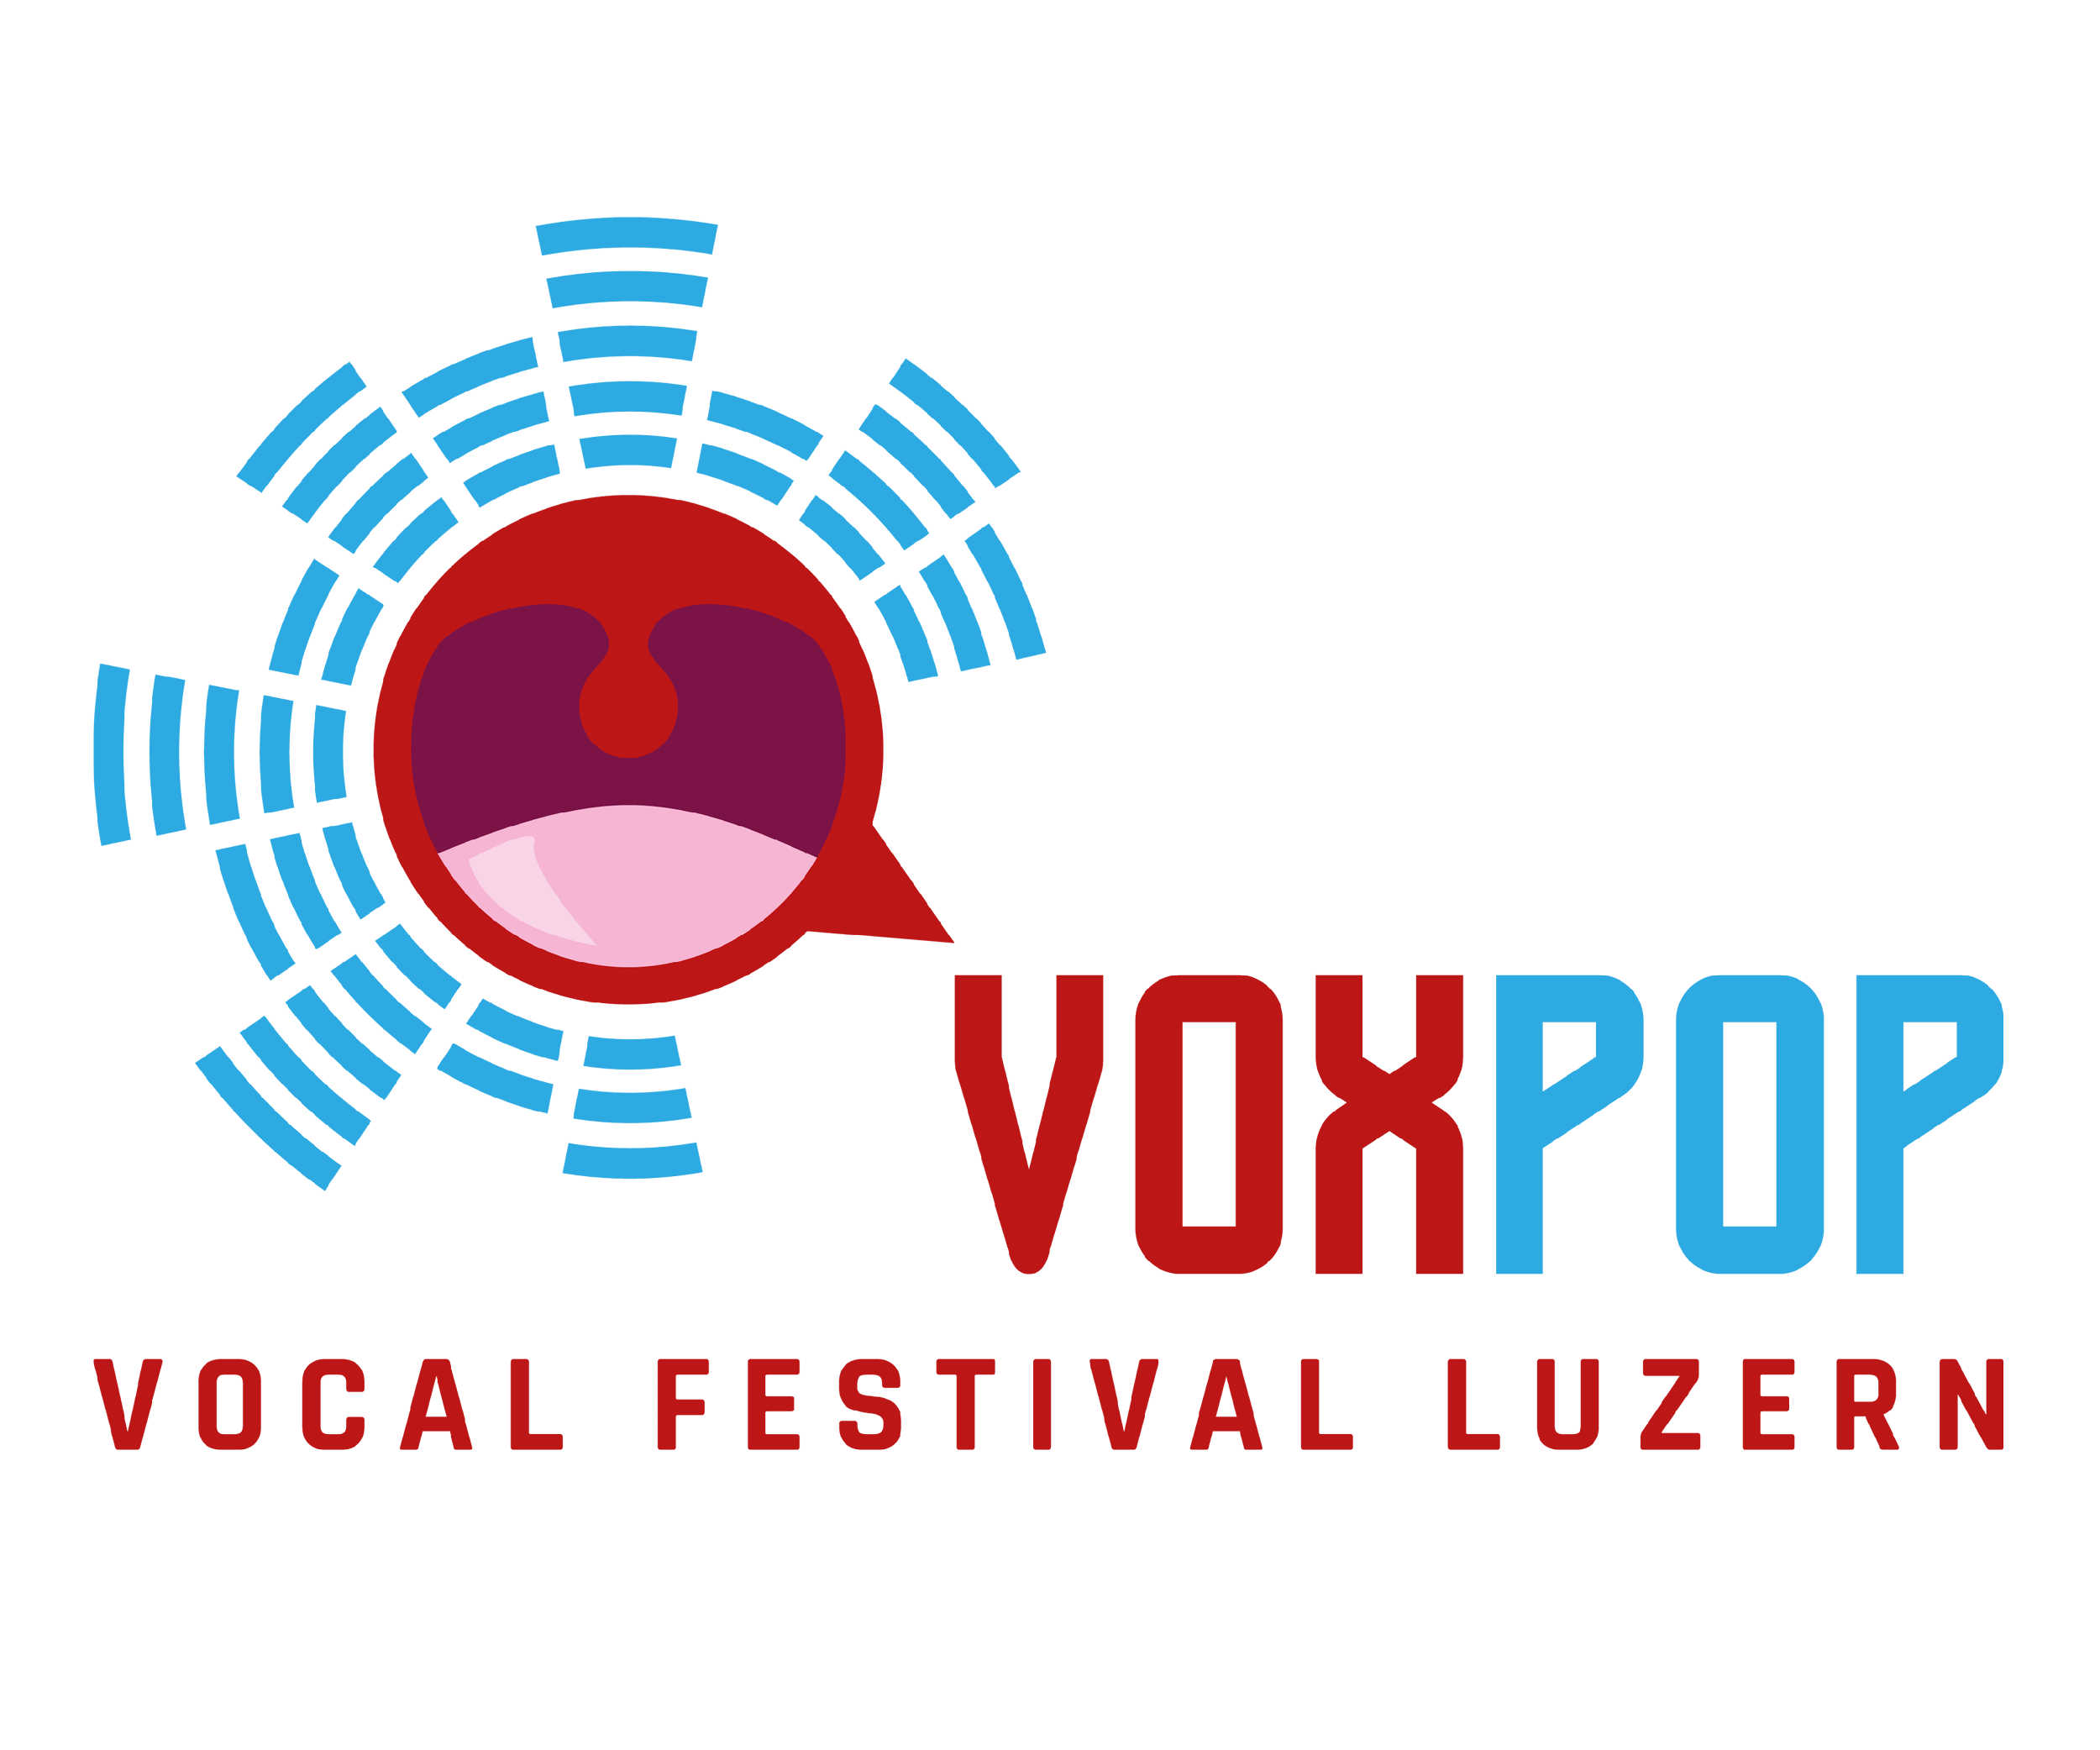 Voxpop Festival Luzern 2022 - Tagespass SA